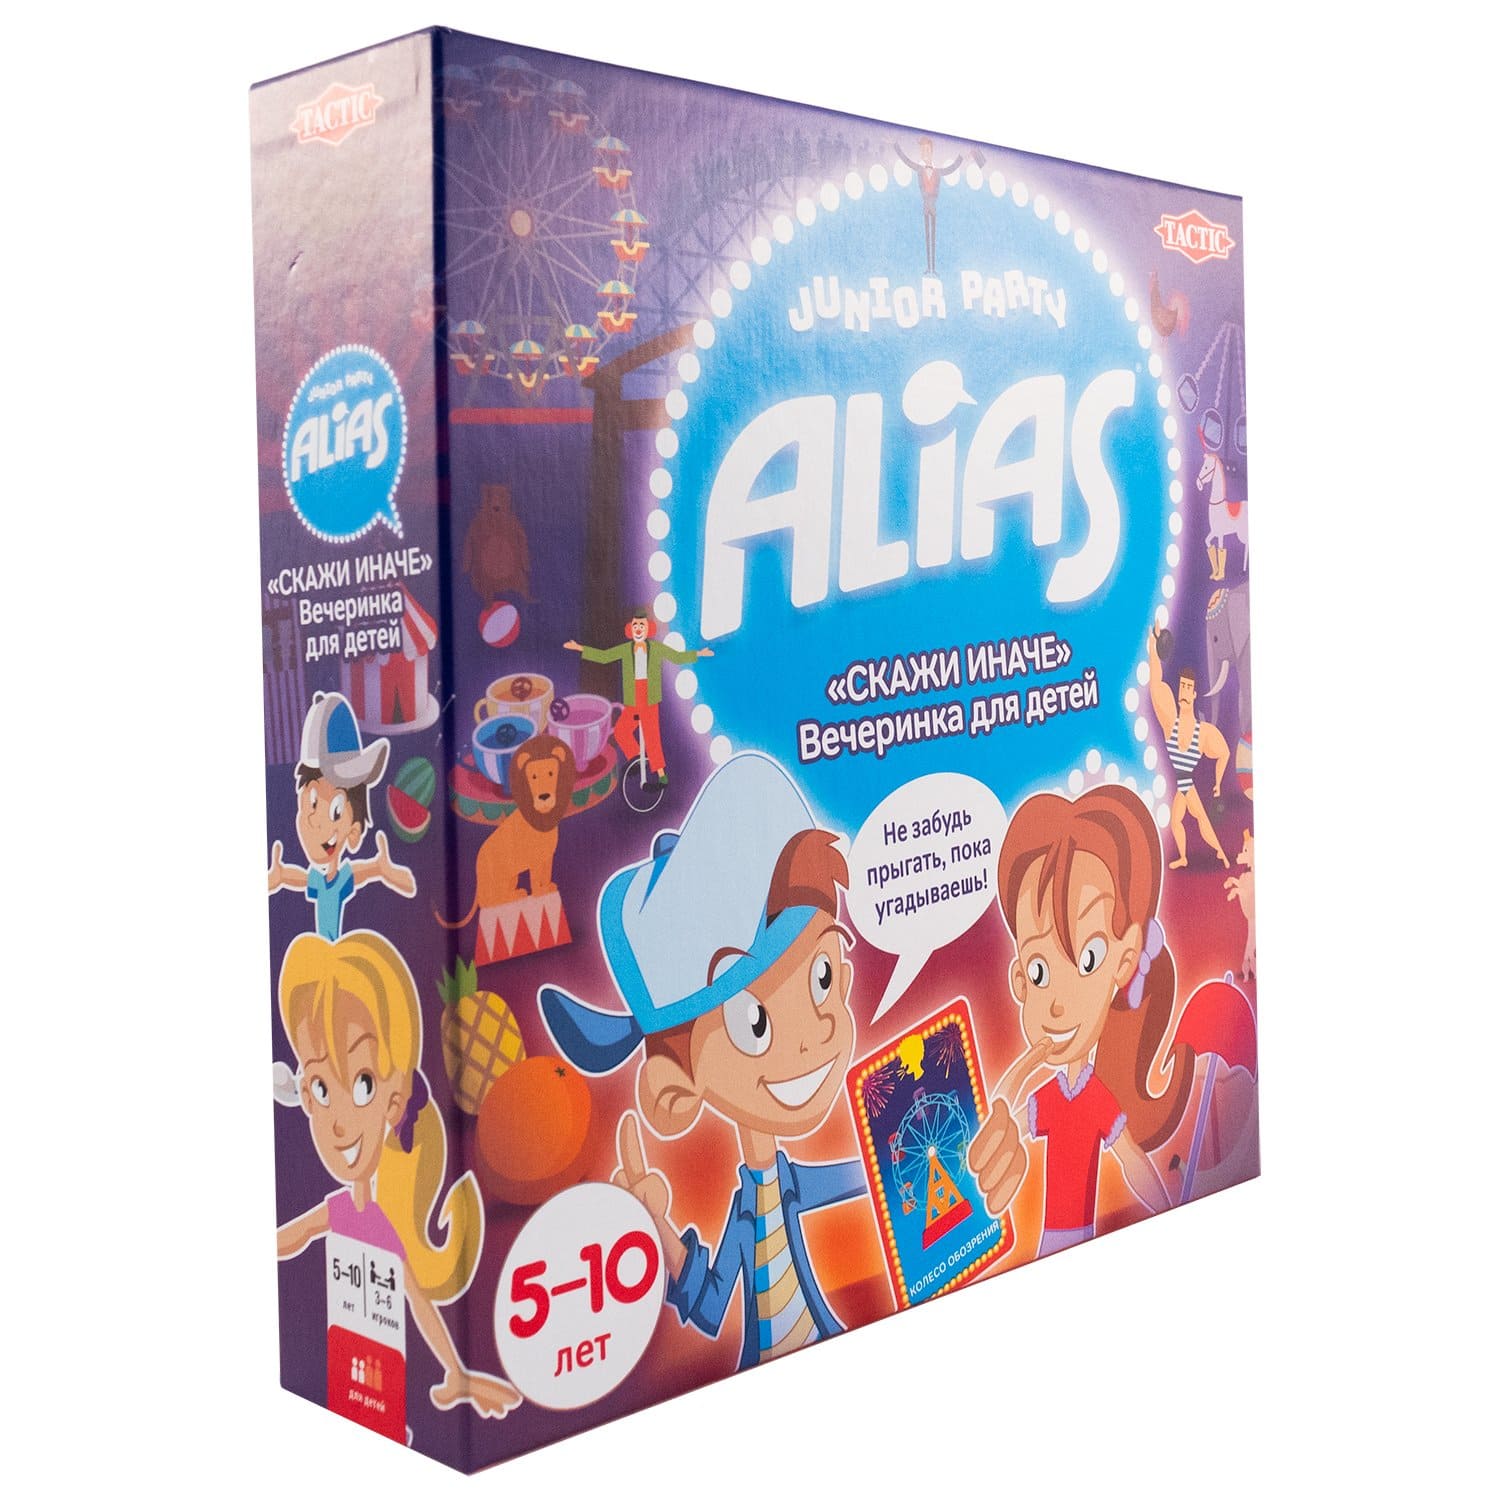 Игра говоря детски. Alias вечеринка настольная игра. Игра скажи иначе+вечеринка. Скажи иначе вечеринка для детей. Алиас для детей.